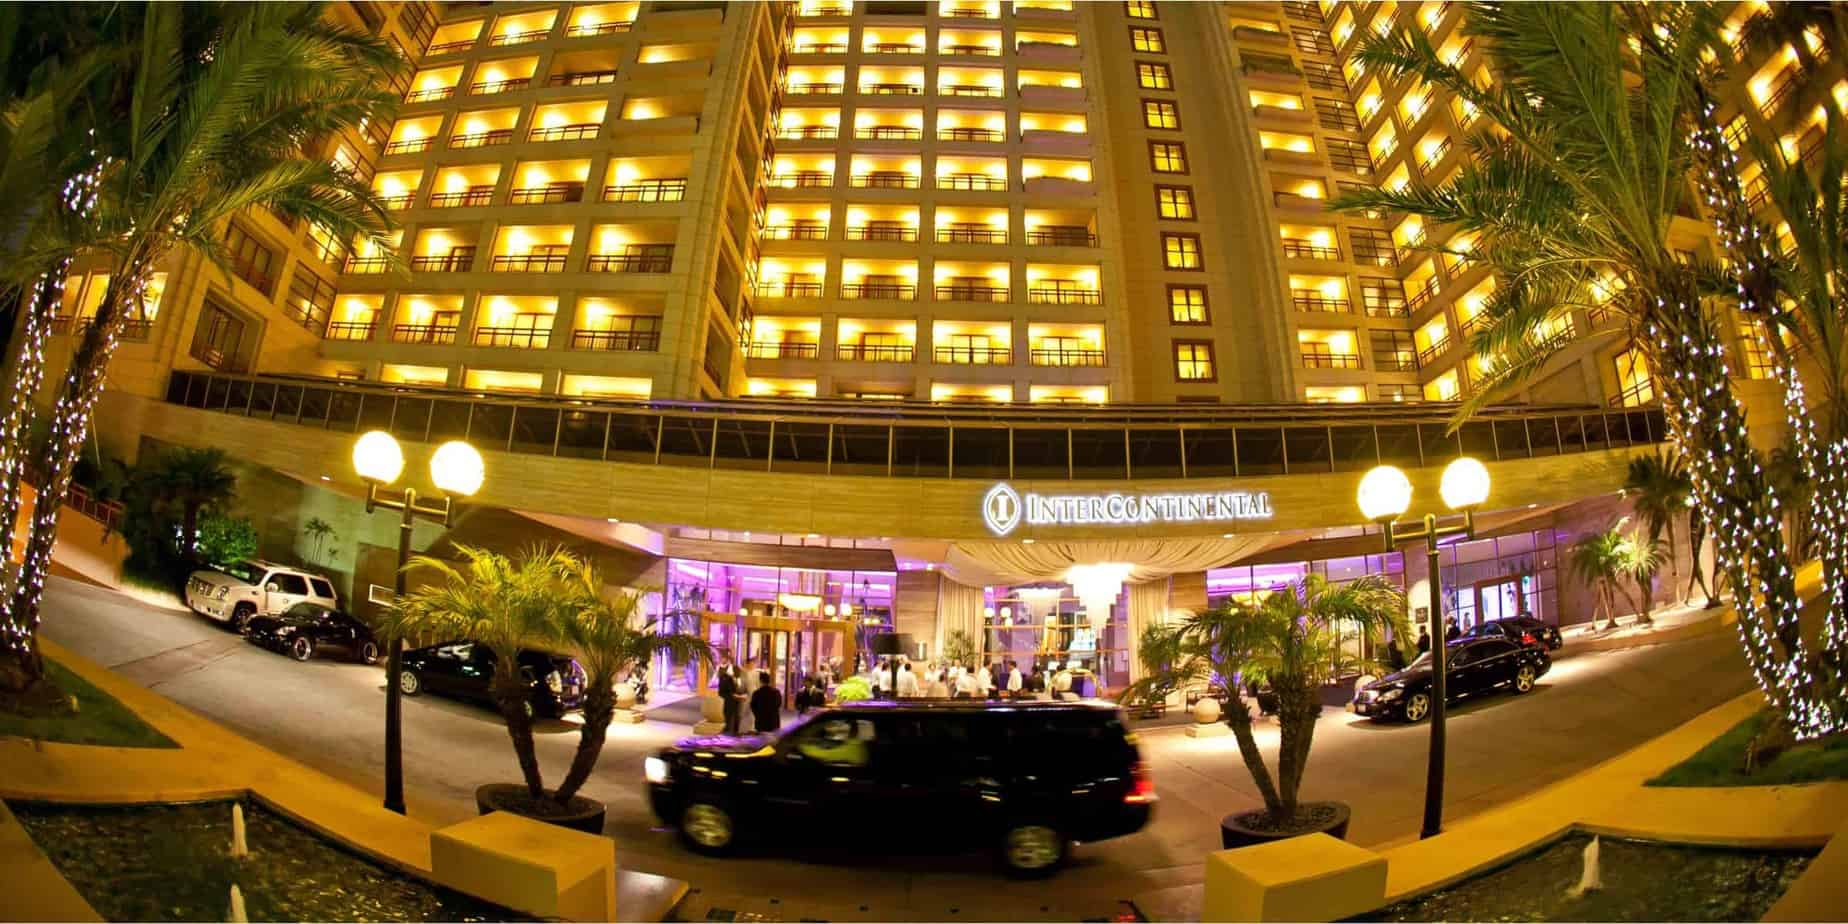 افضل 15 فندق في لوس انجلوس من المسافرون العرب